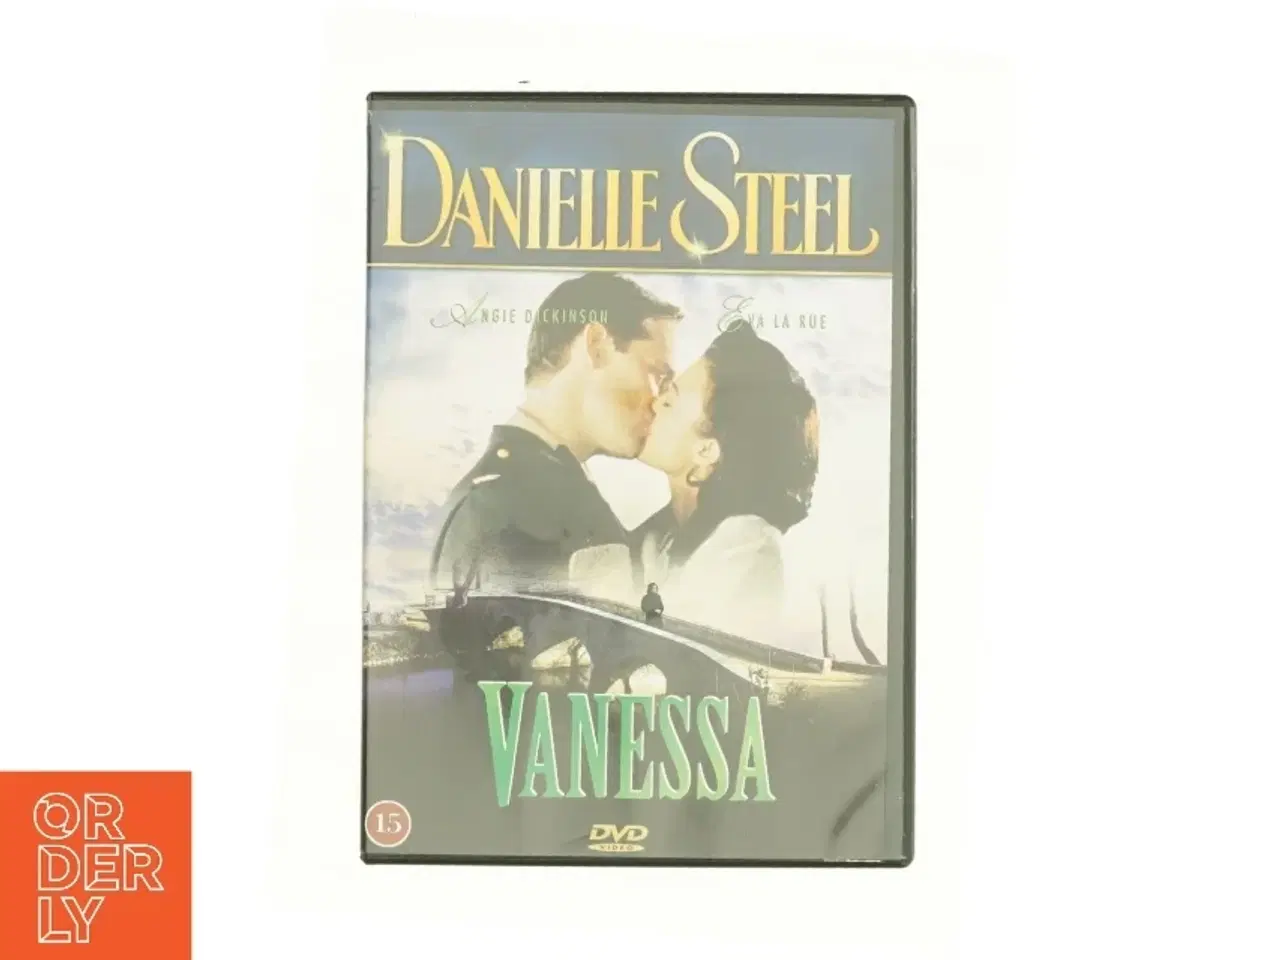 Billede 1 - "Danielle Steel" Vanessa